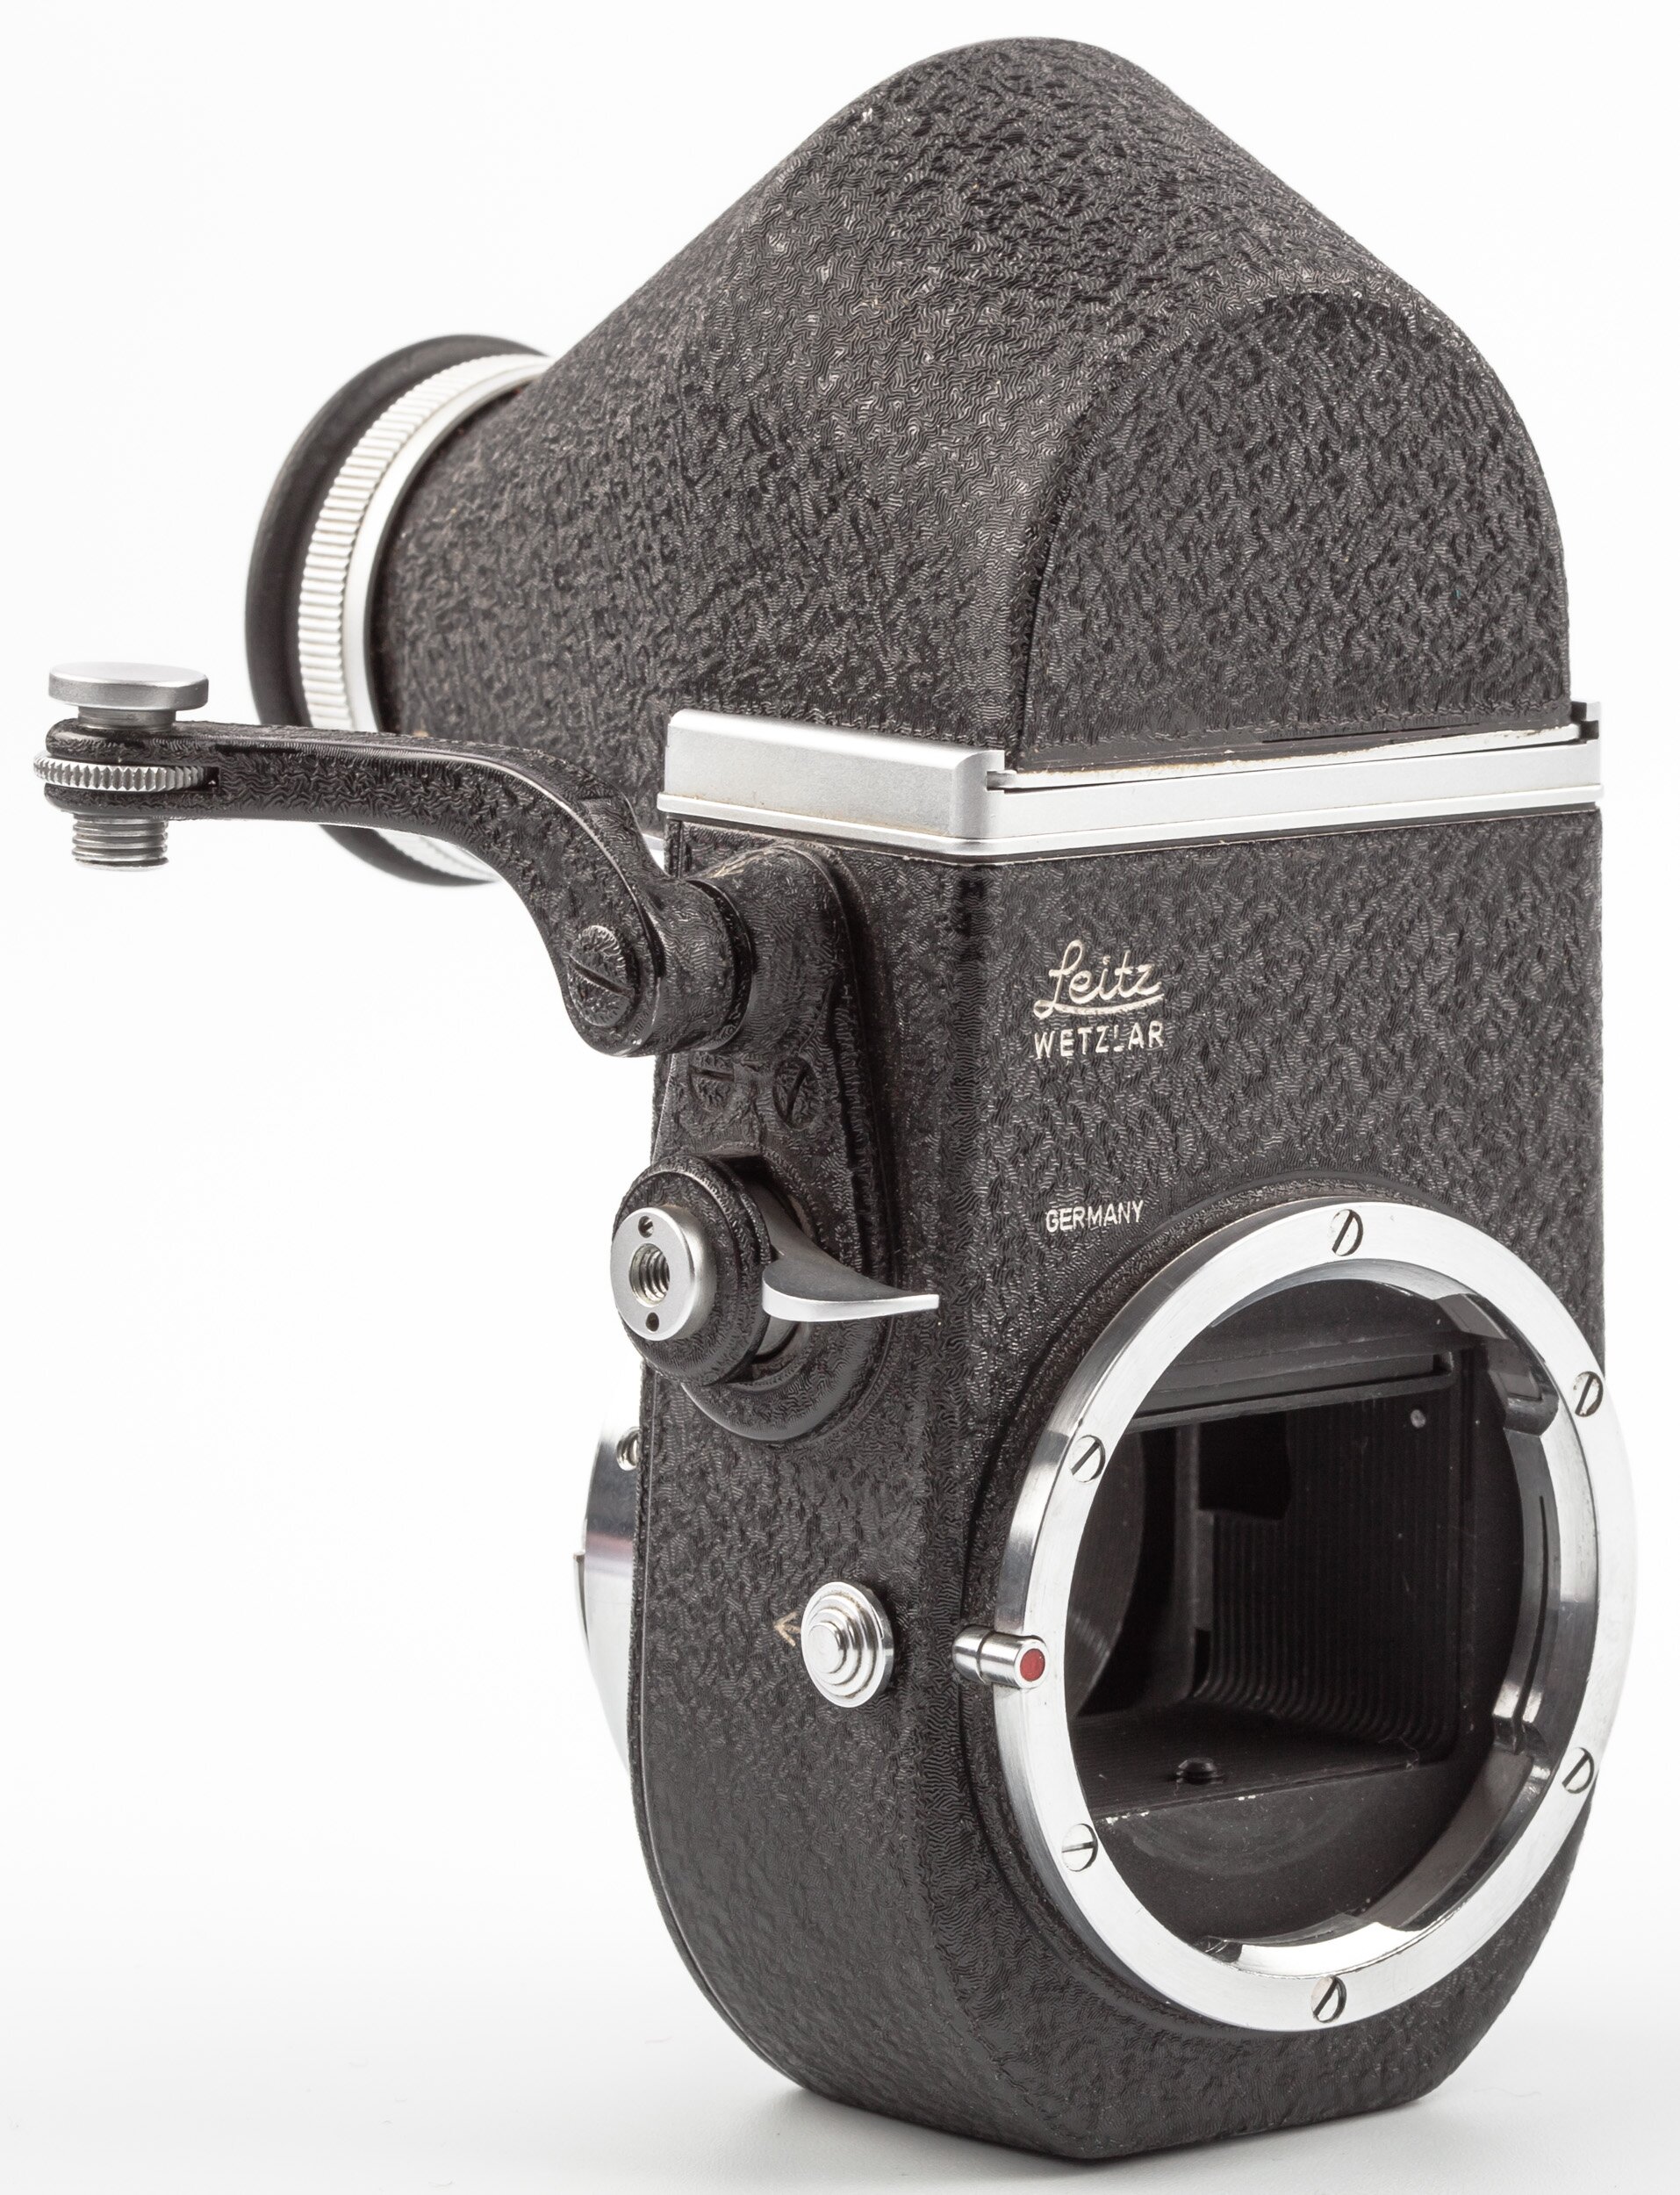 Leica Visoflex II with OTXBO